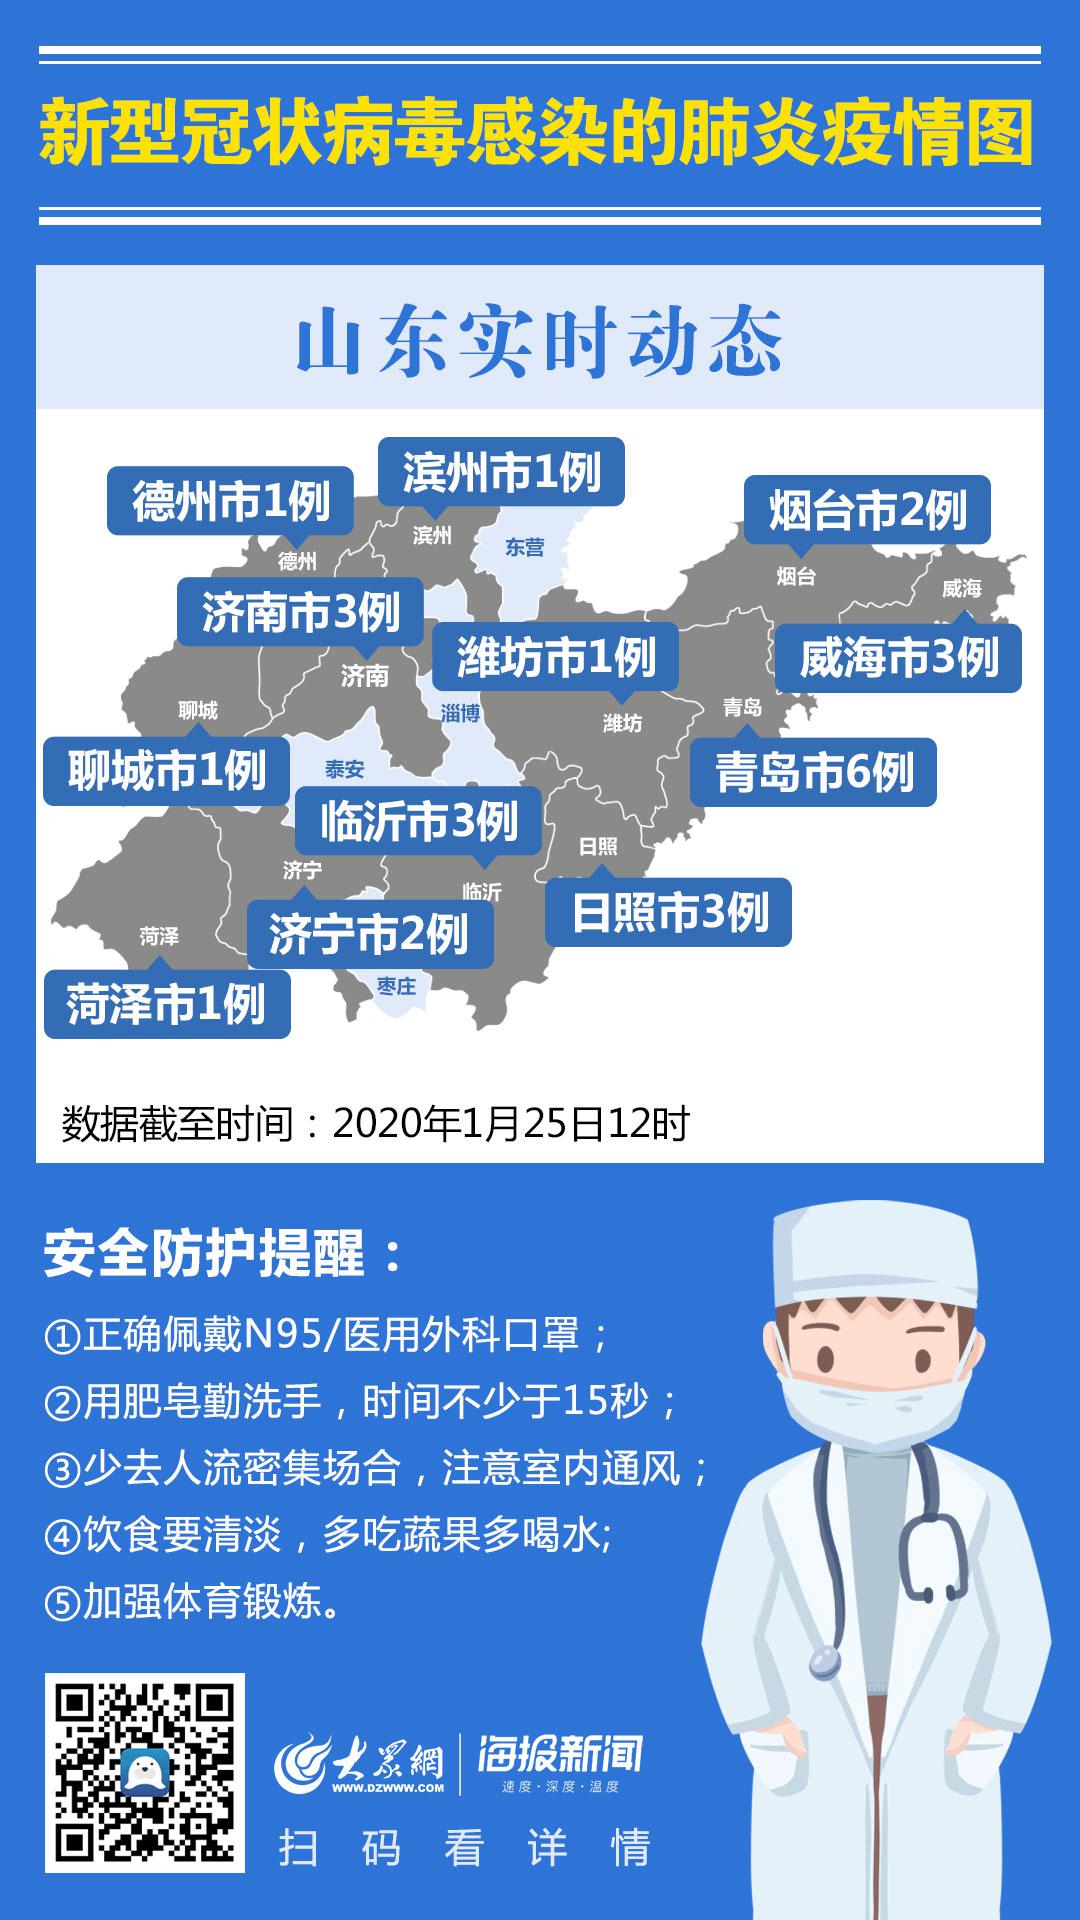 2020年1月25日0时至12时山东省新型冠状病毒感染的肺炎疫情情况